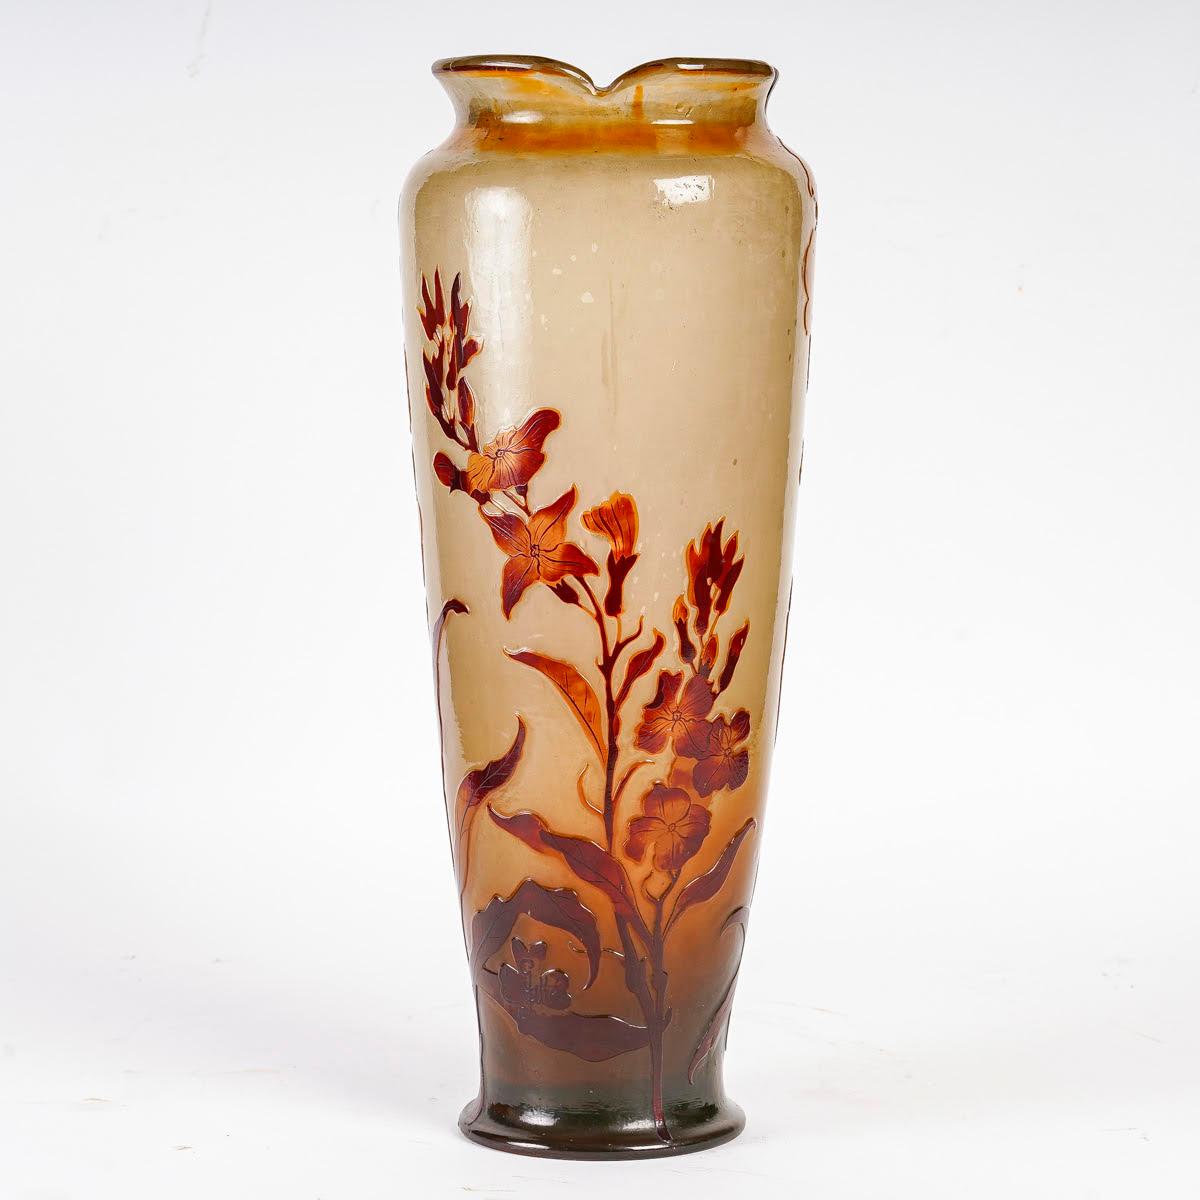 Large Art Nouveau Gallé Vase, pâte de verre, circa 1900.

Art Nouveau Gallé vase, circa 1900, pâte de verre, signed.
h:45cm, d: 18cm